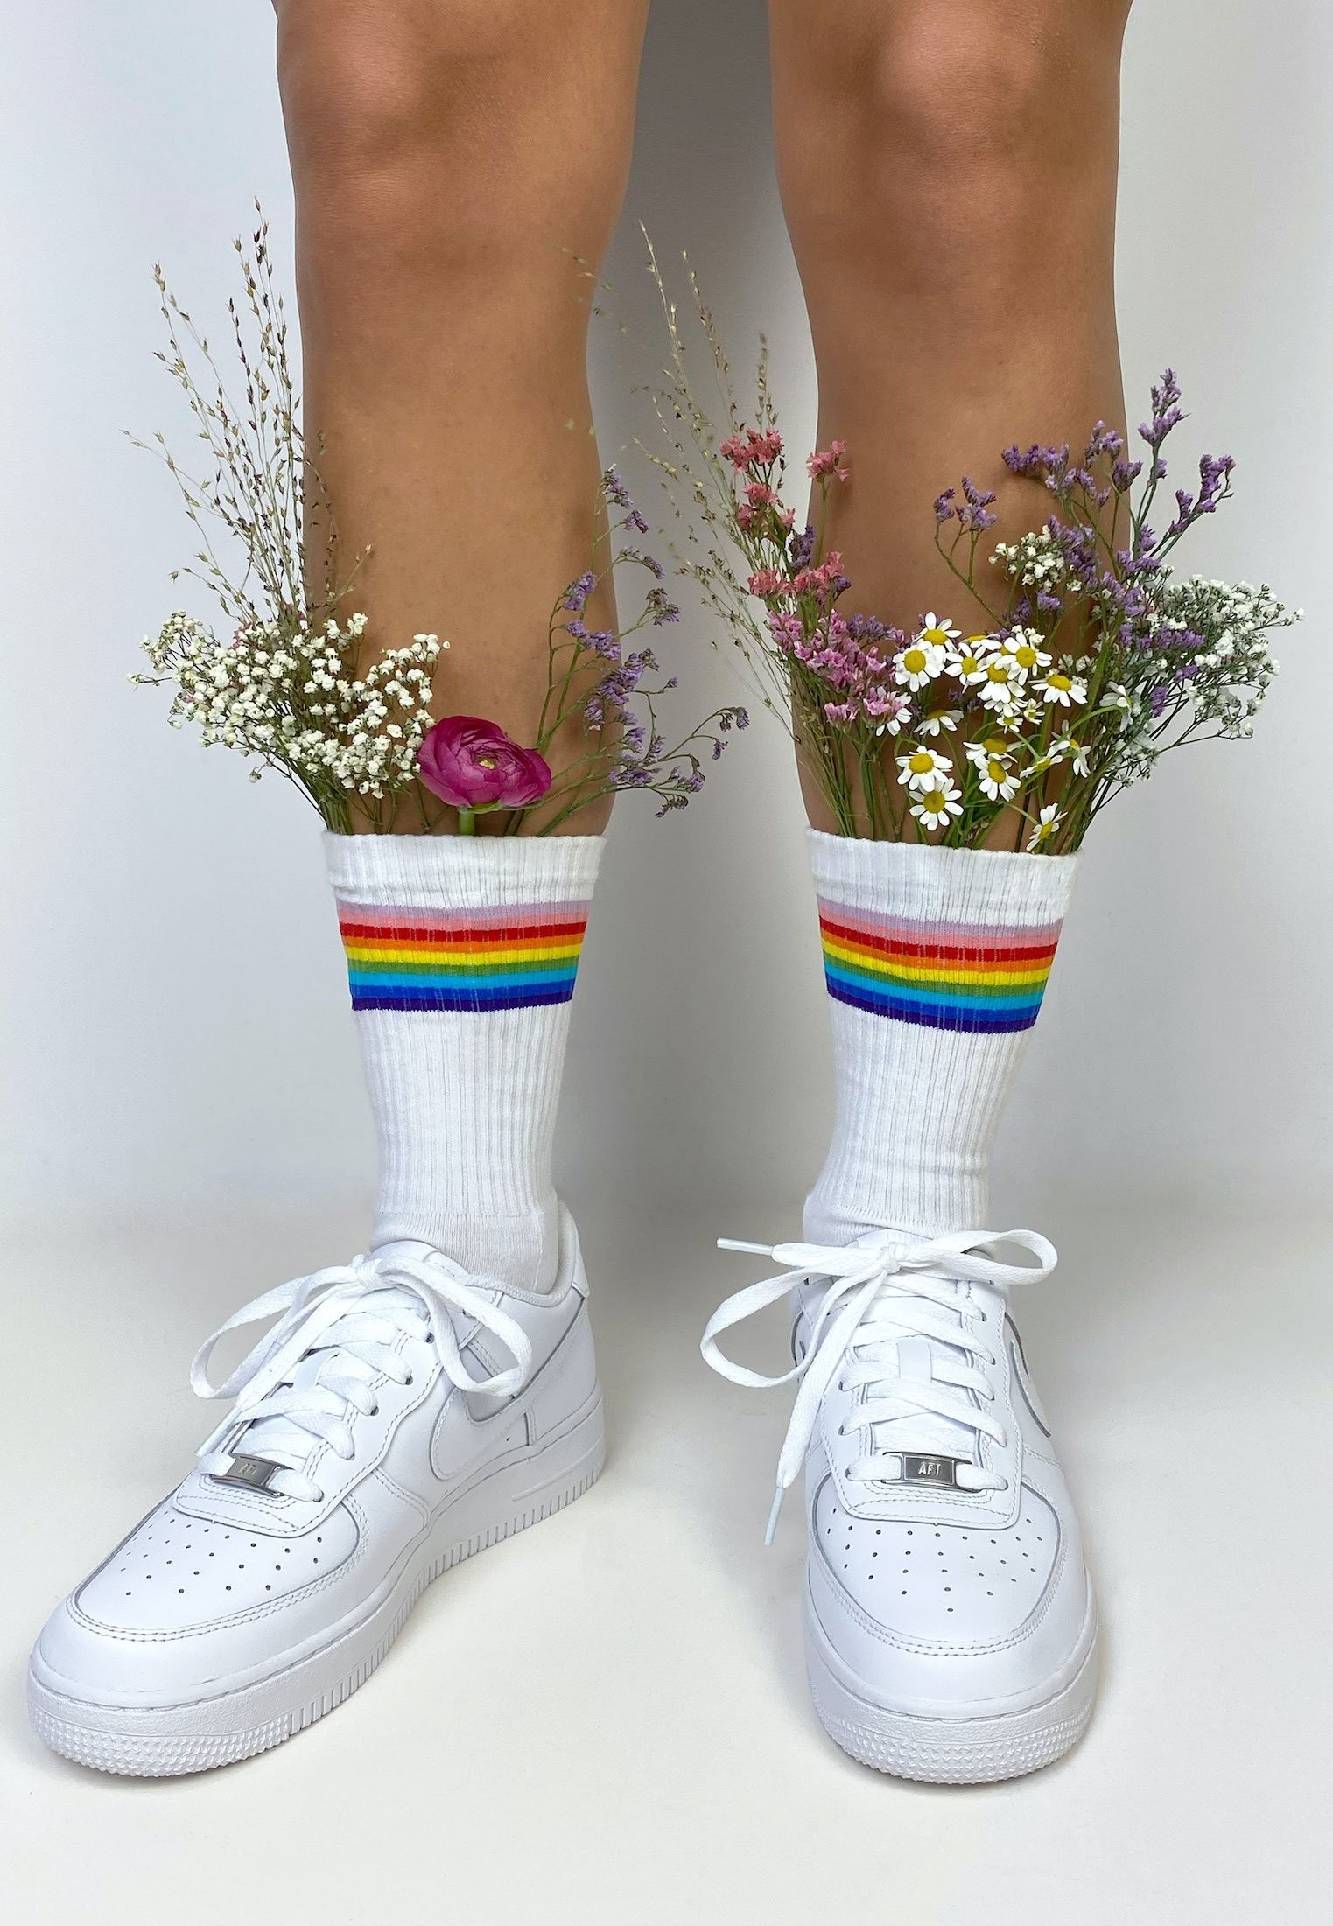 Celebrate Diversity Socks